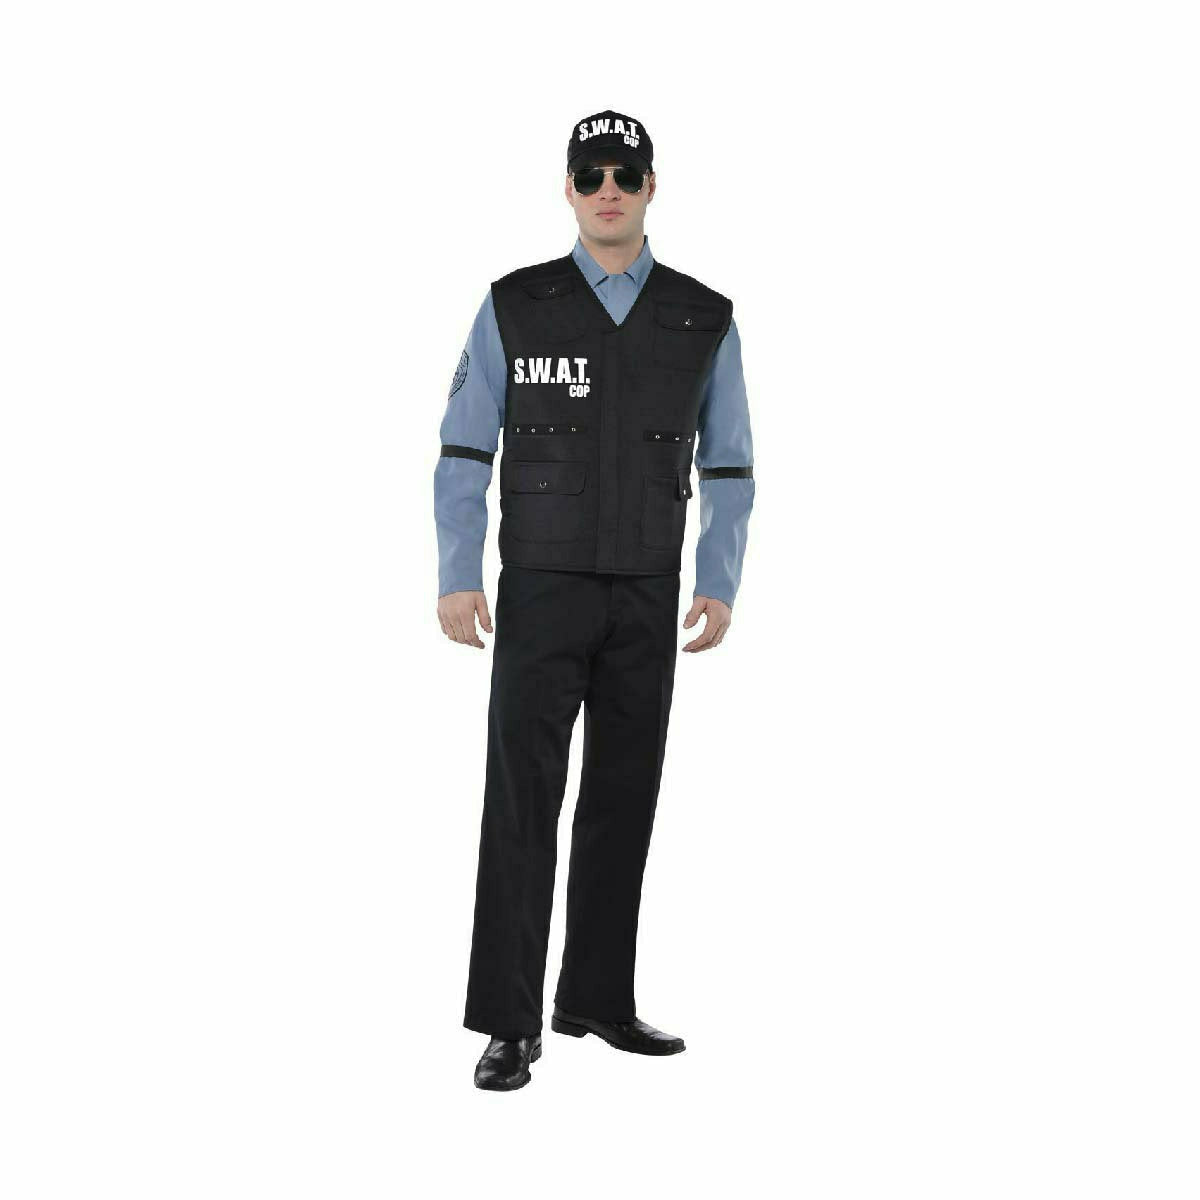 Plus Size Men's Cop Costume